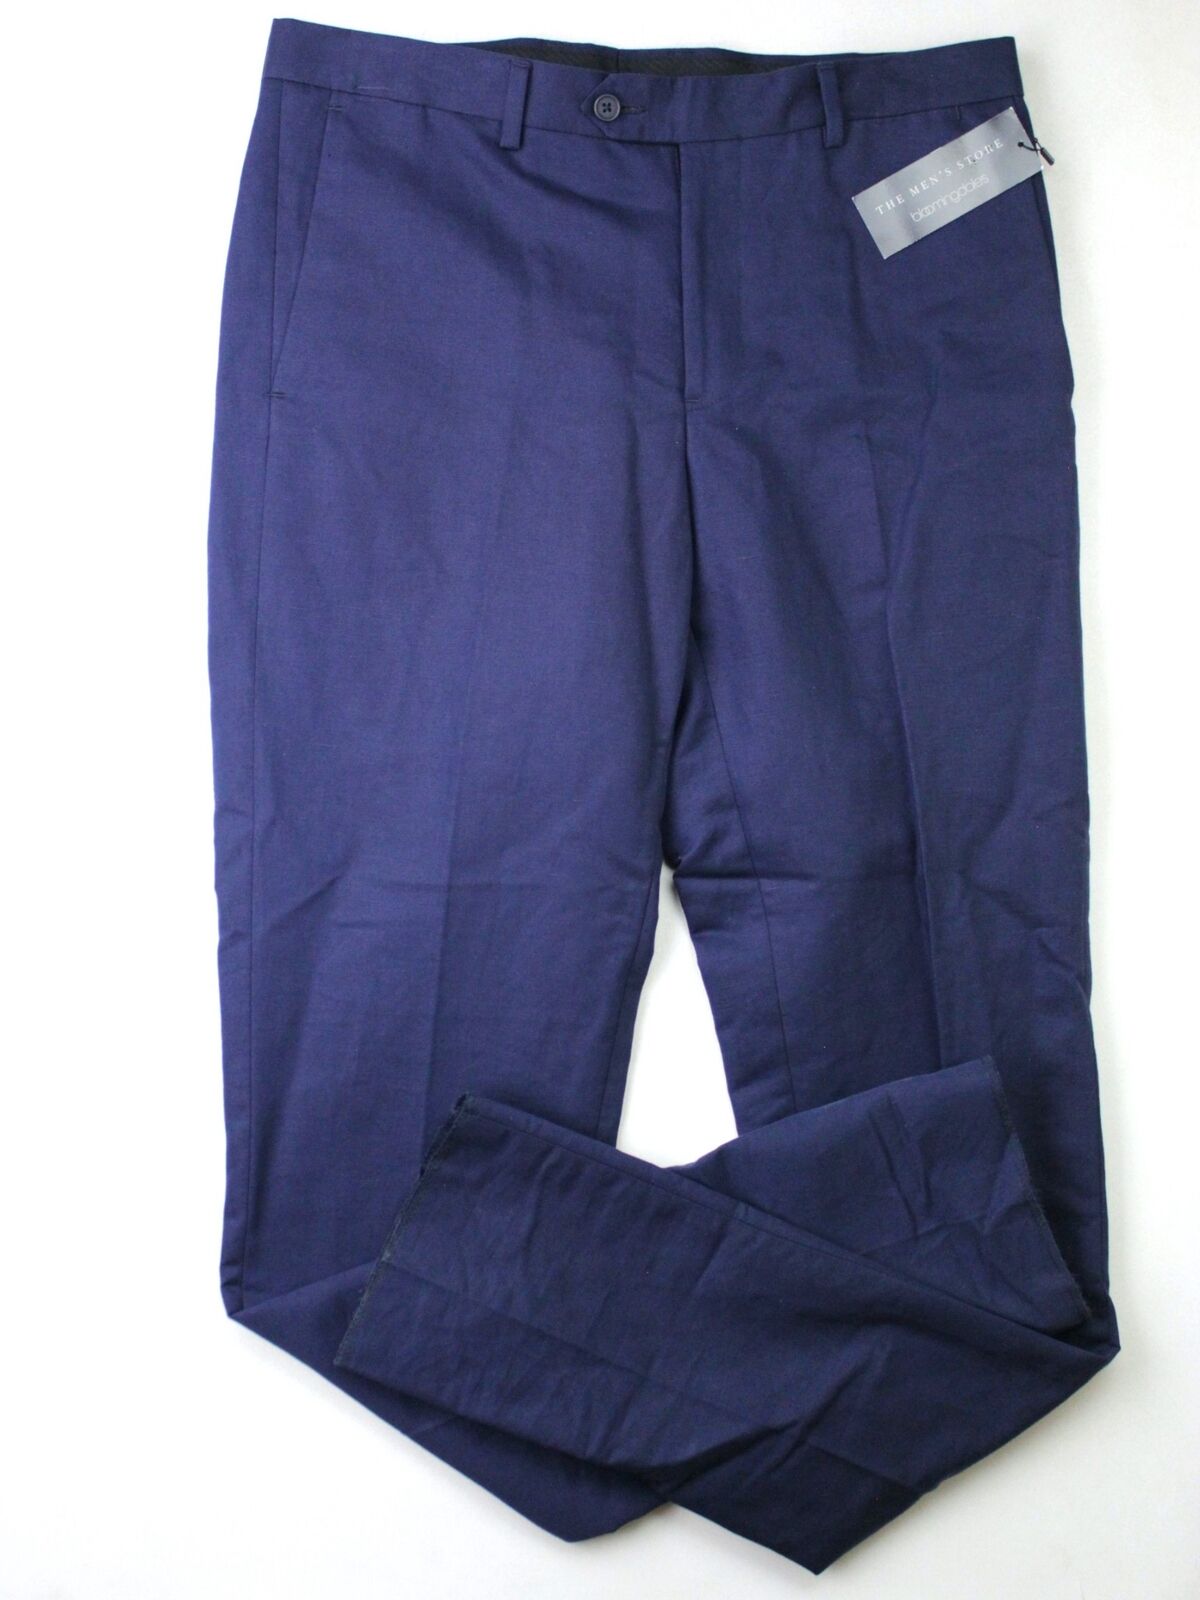 Mens Store Bloomingdales Cotton & Linen Slim Fit Size 40 Dress Pants Navy Blue